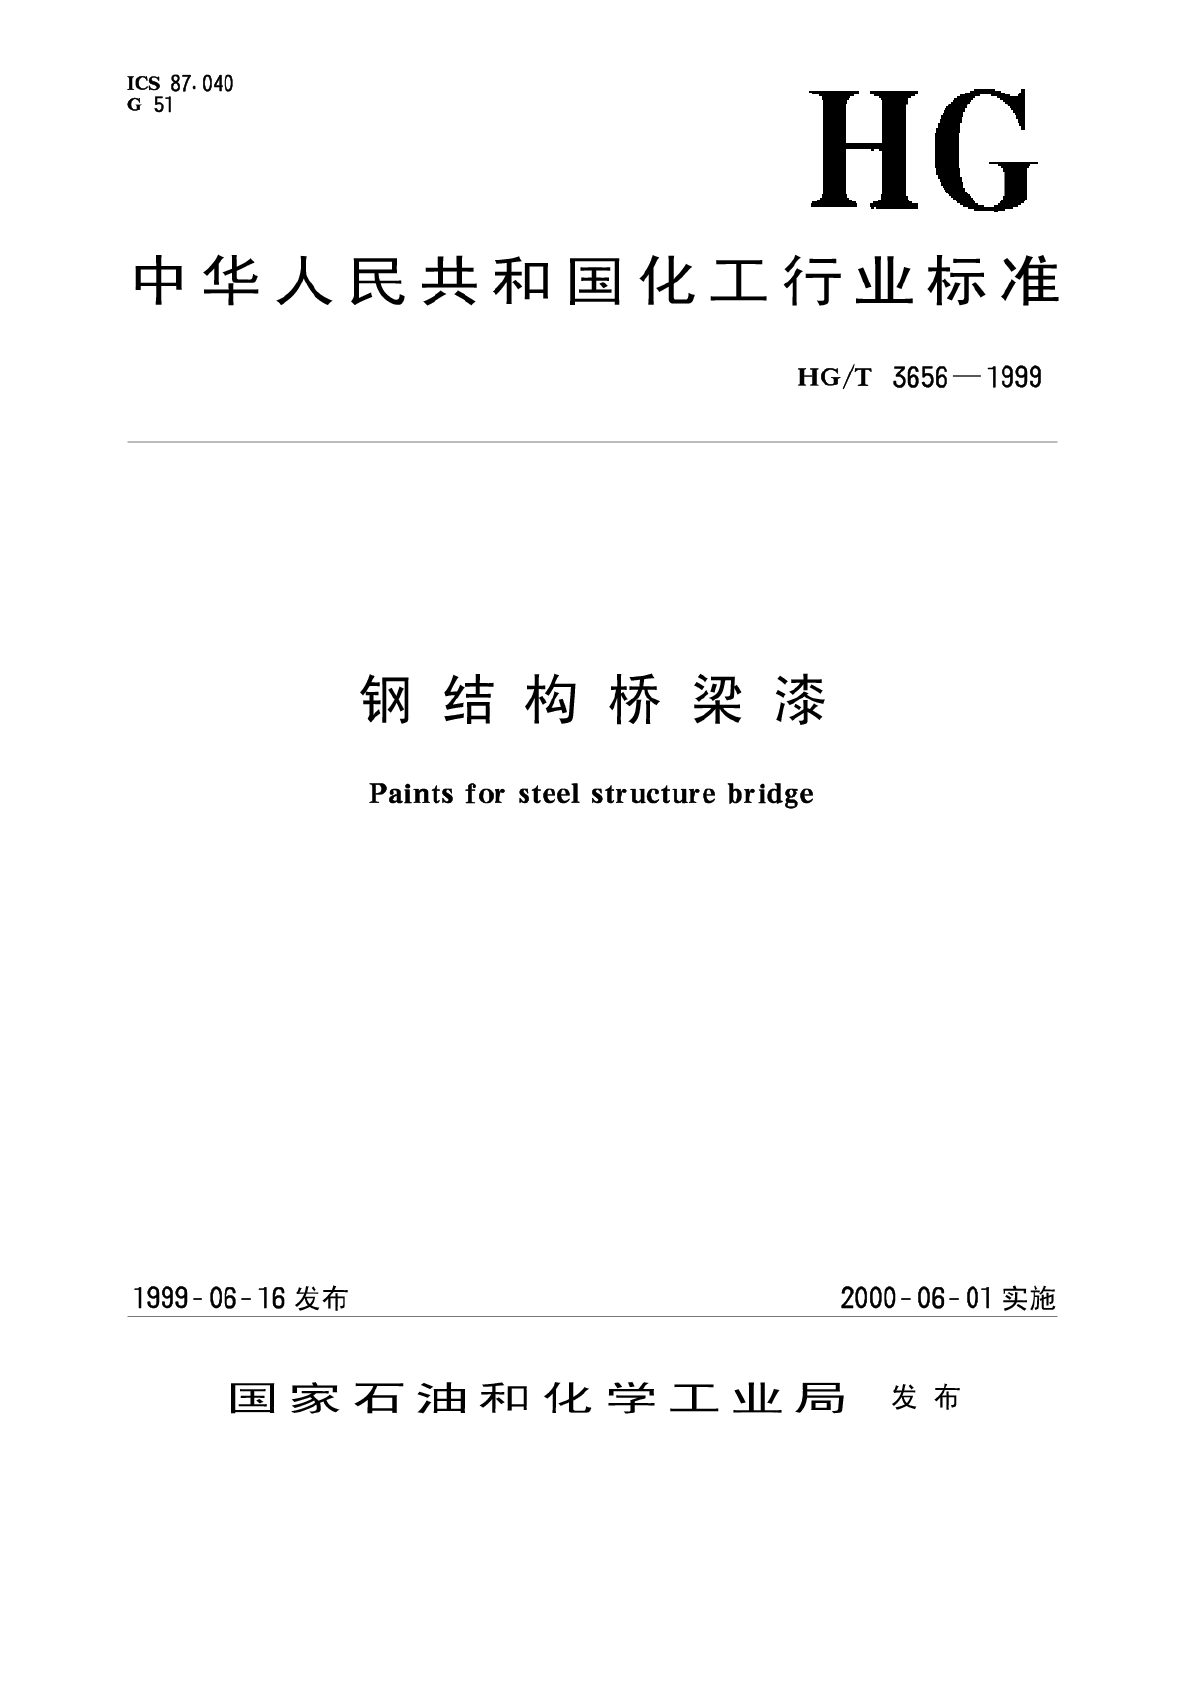 HG-T3656-1999钢结构桥梁漆.pdf